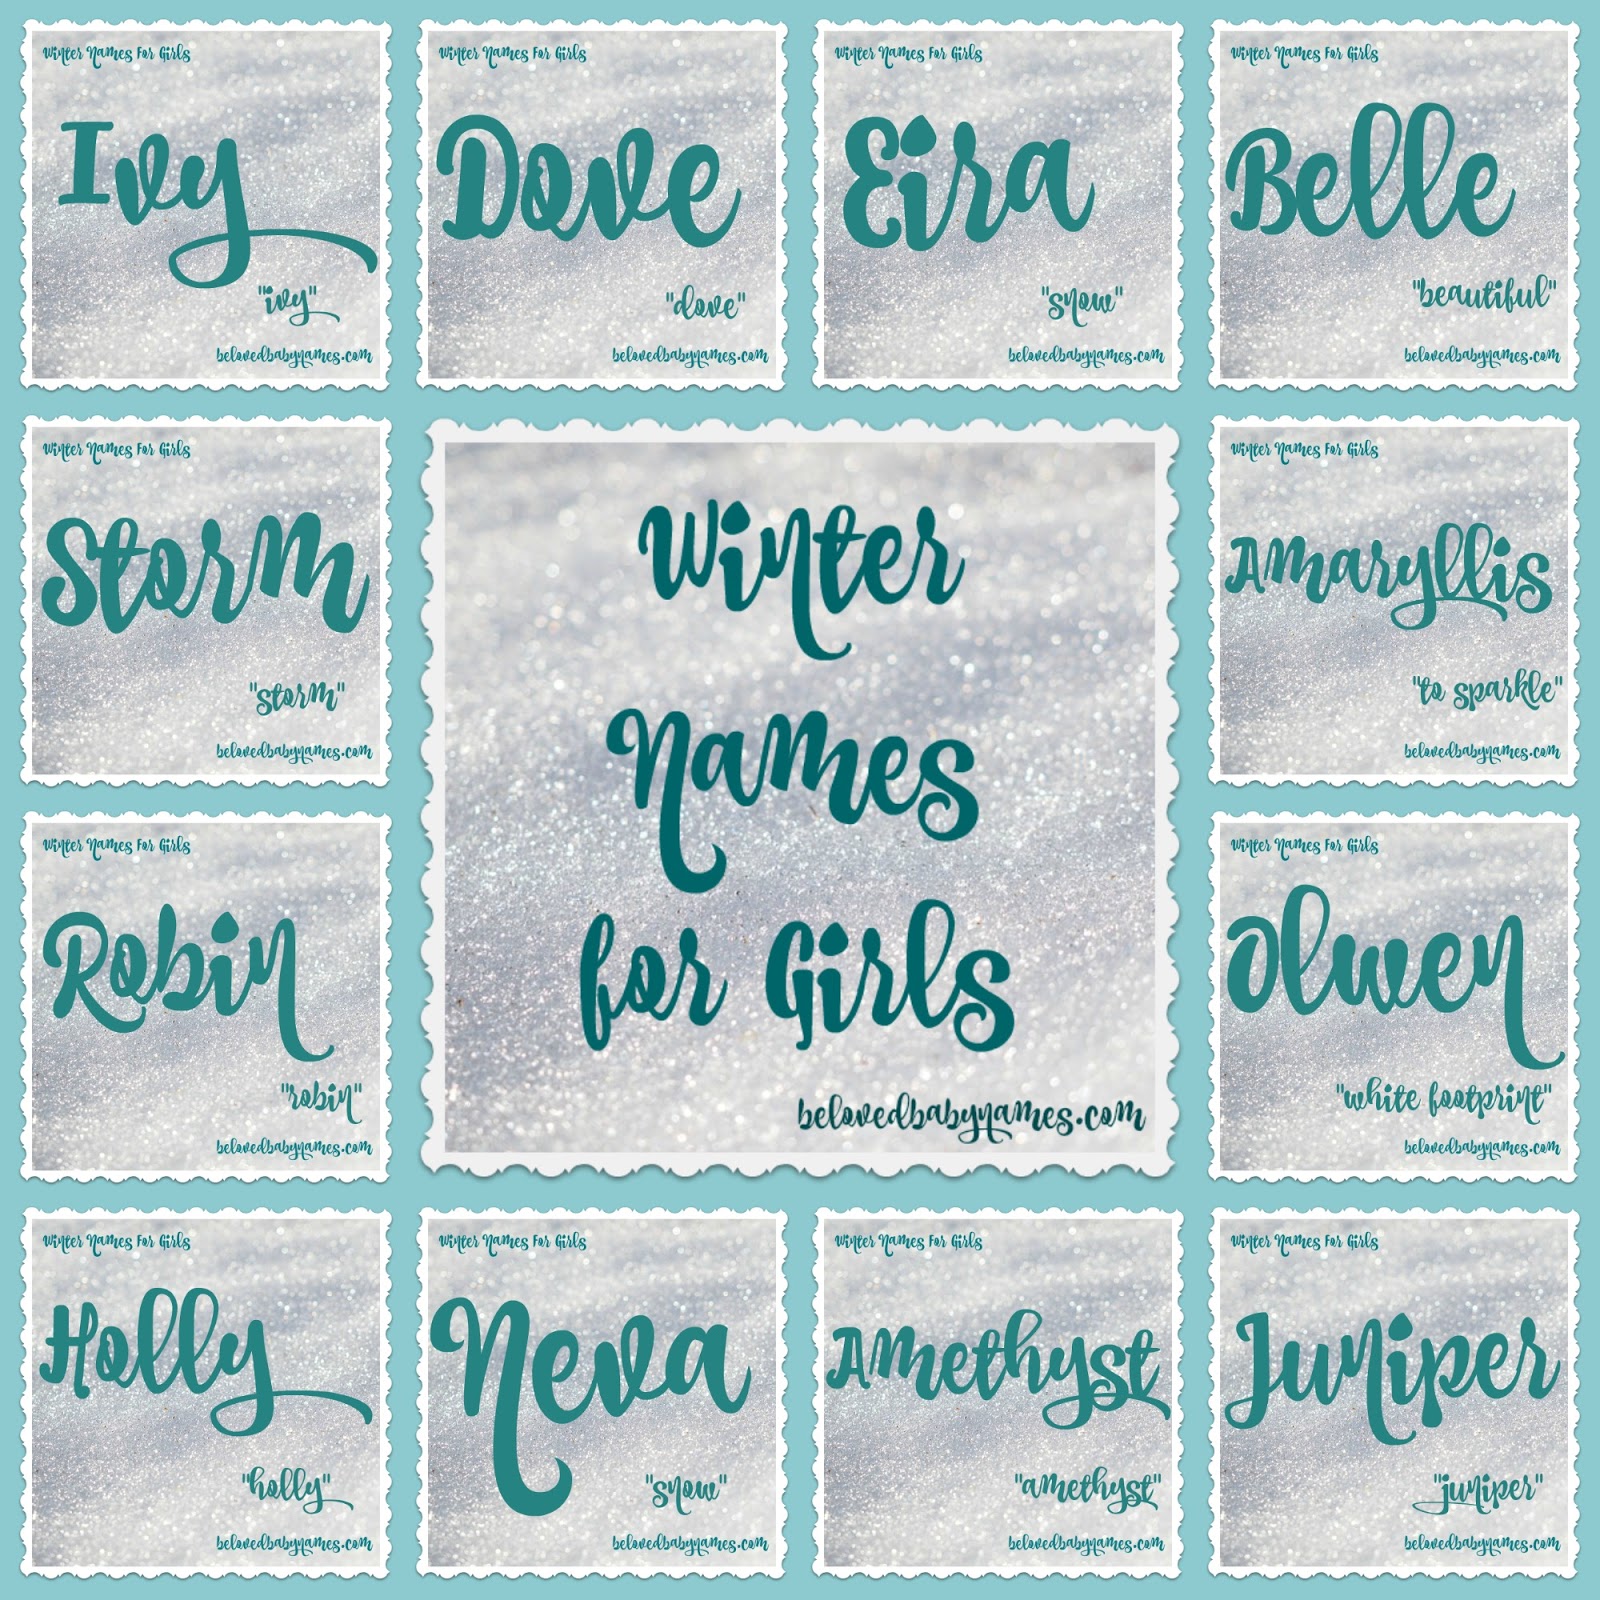 nicknames for girls